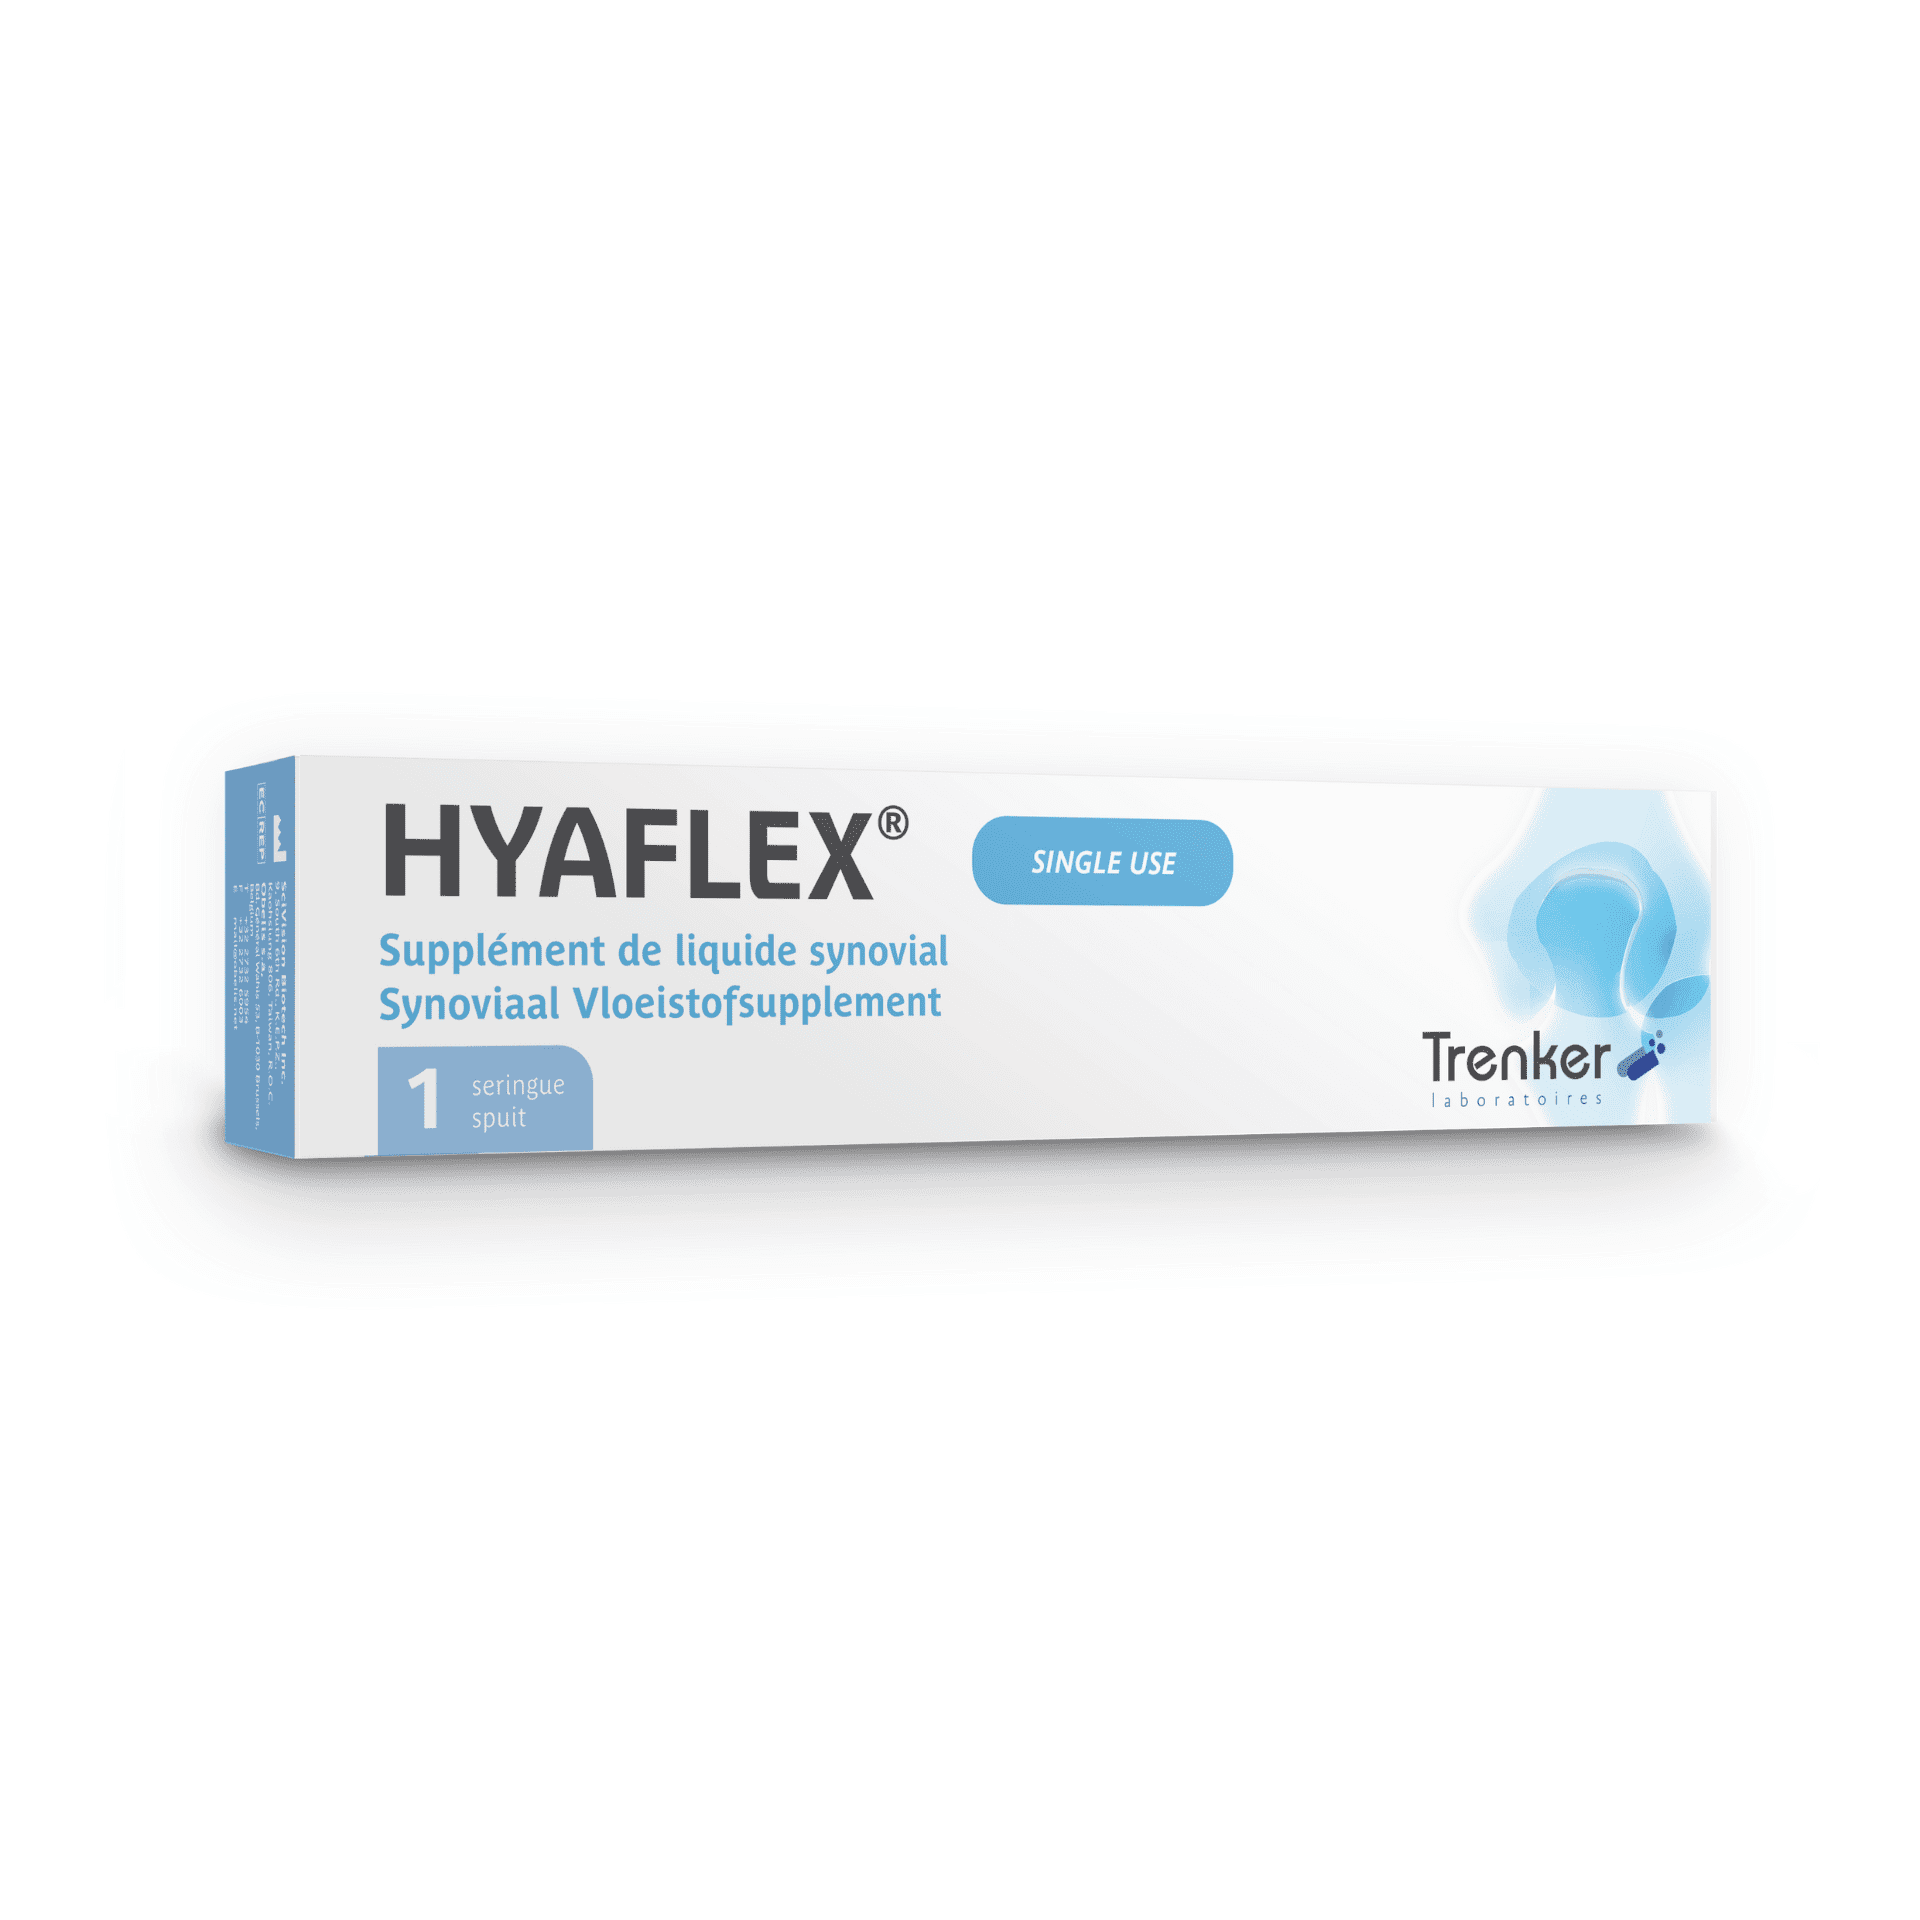 Trenker Hyaflex